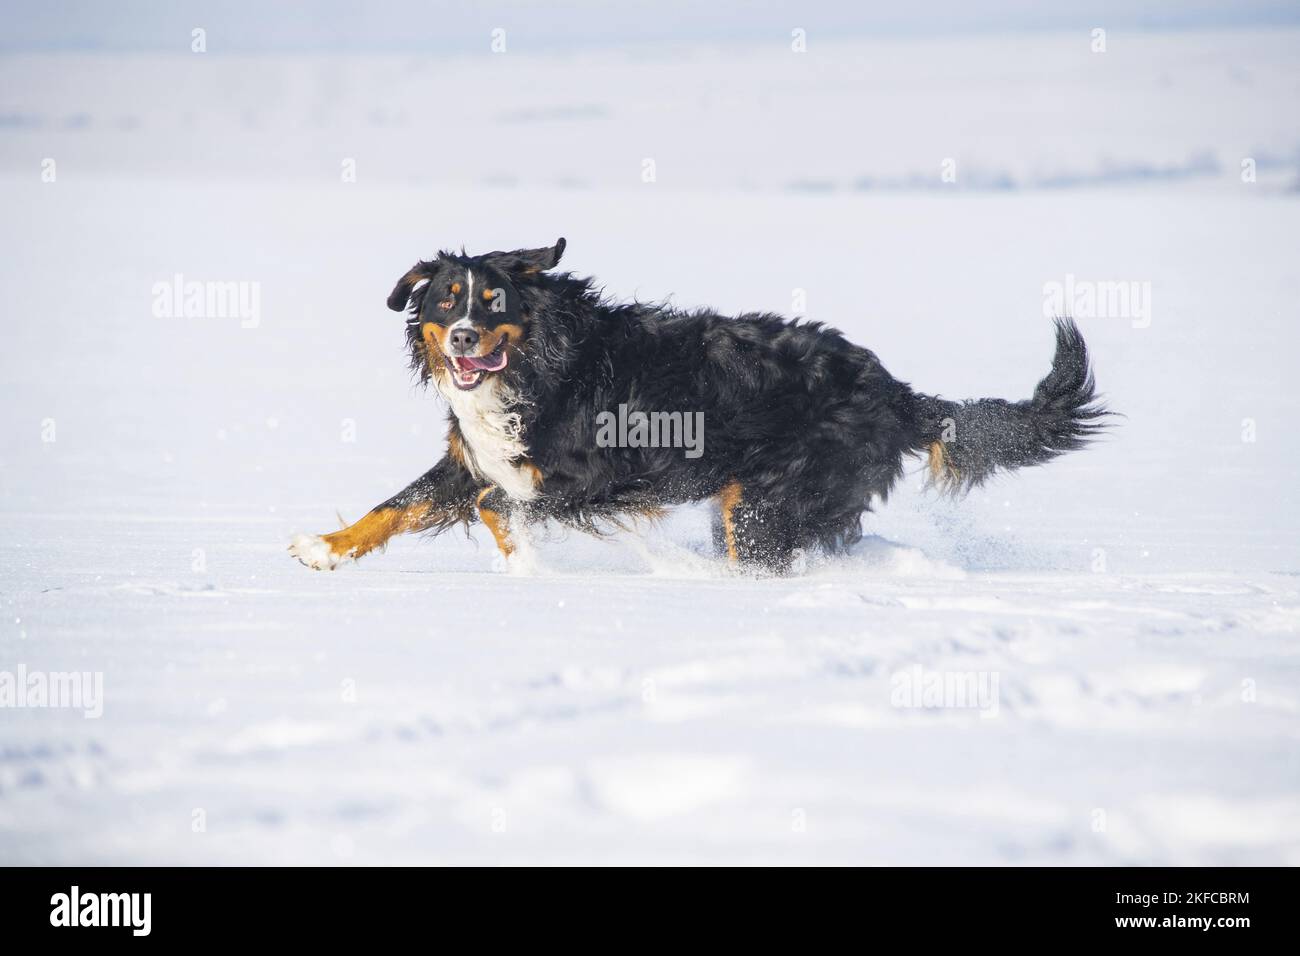 Bernese mountain dog runs through the snow Stock Photo